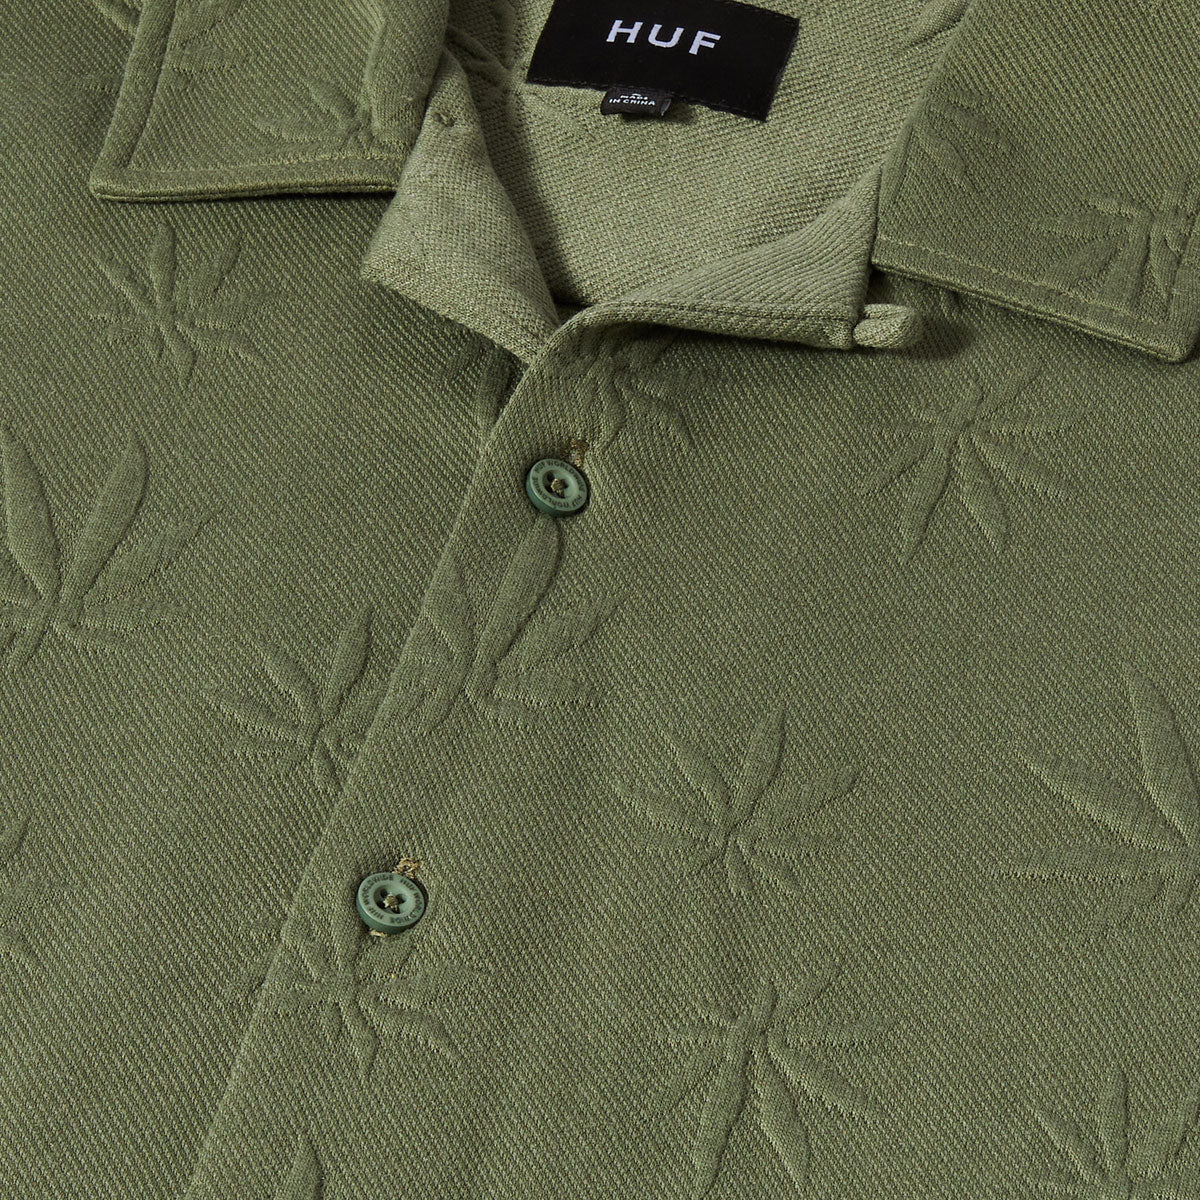 HUF Plantlife Jacquard Shirt - Moss image 3